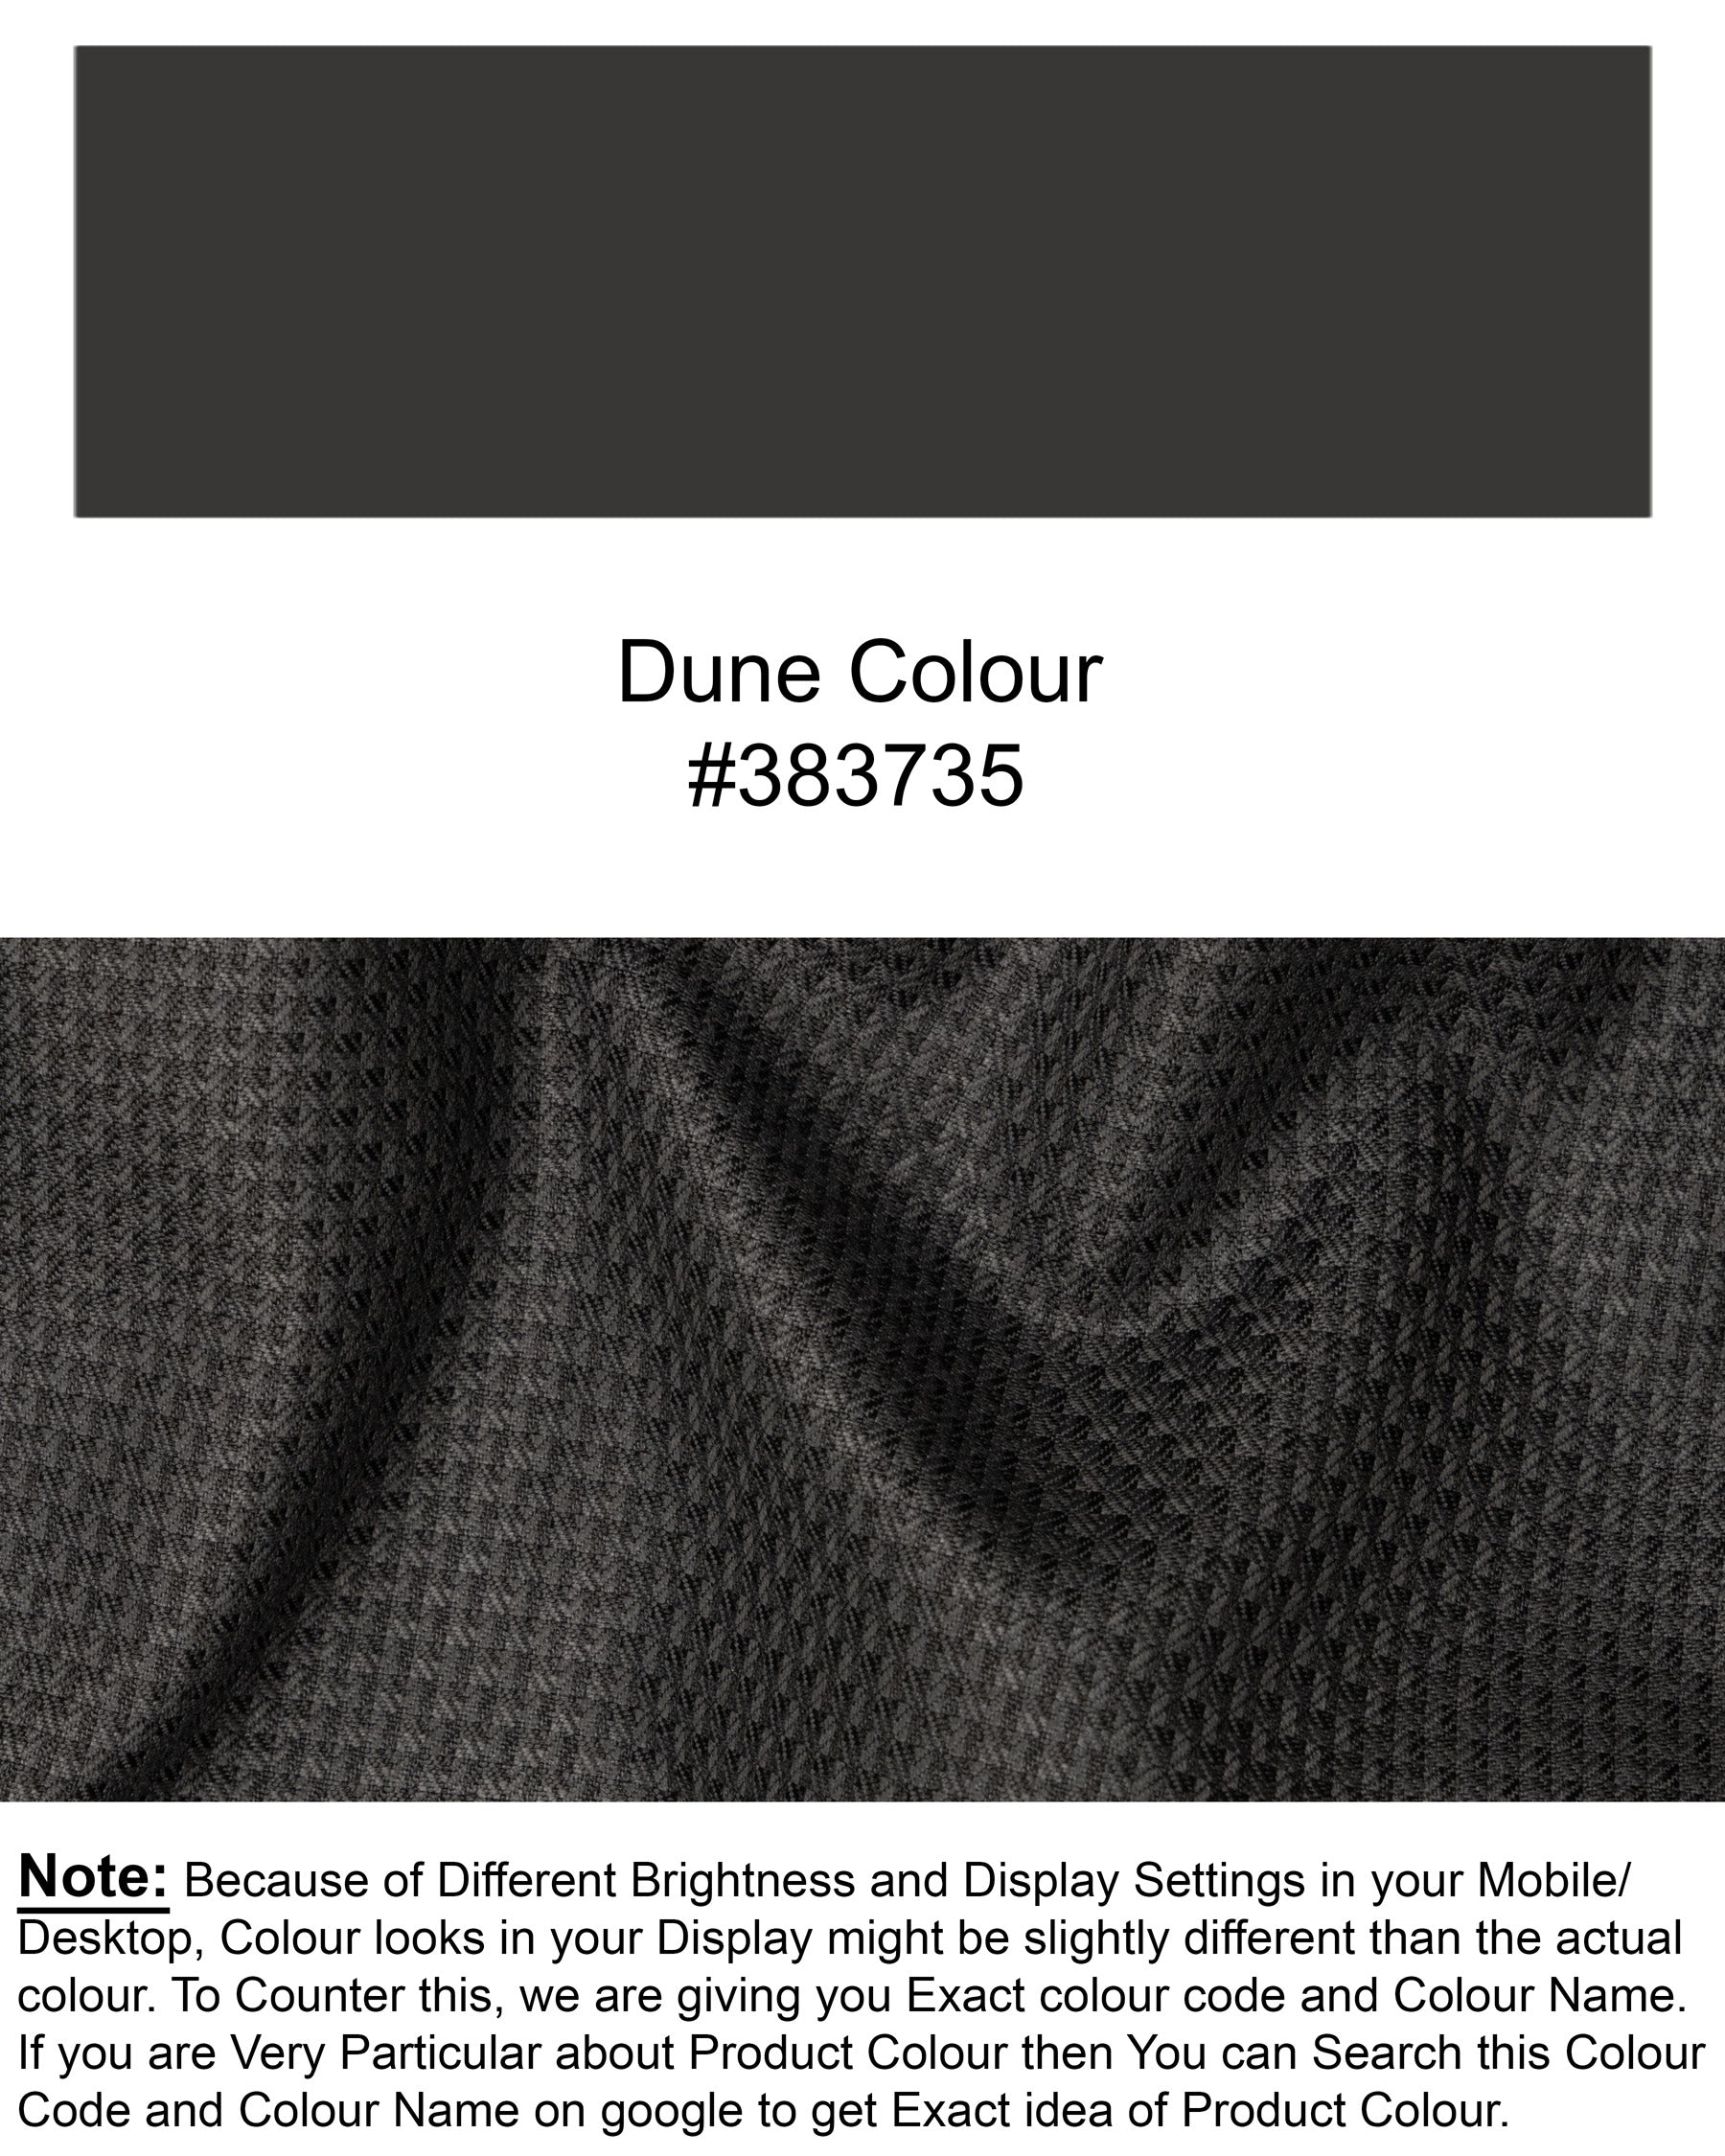 Dune Brown Textured Waistcoat V1754-36, V1754-38, V1754-40, V1754-42, V1754-44, V1754-46, V1754-48, V1754-50, V1754-52, V1754-54, V1754-56, V1754-58, V1754-60